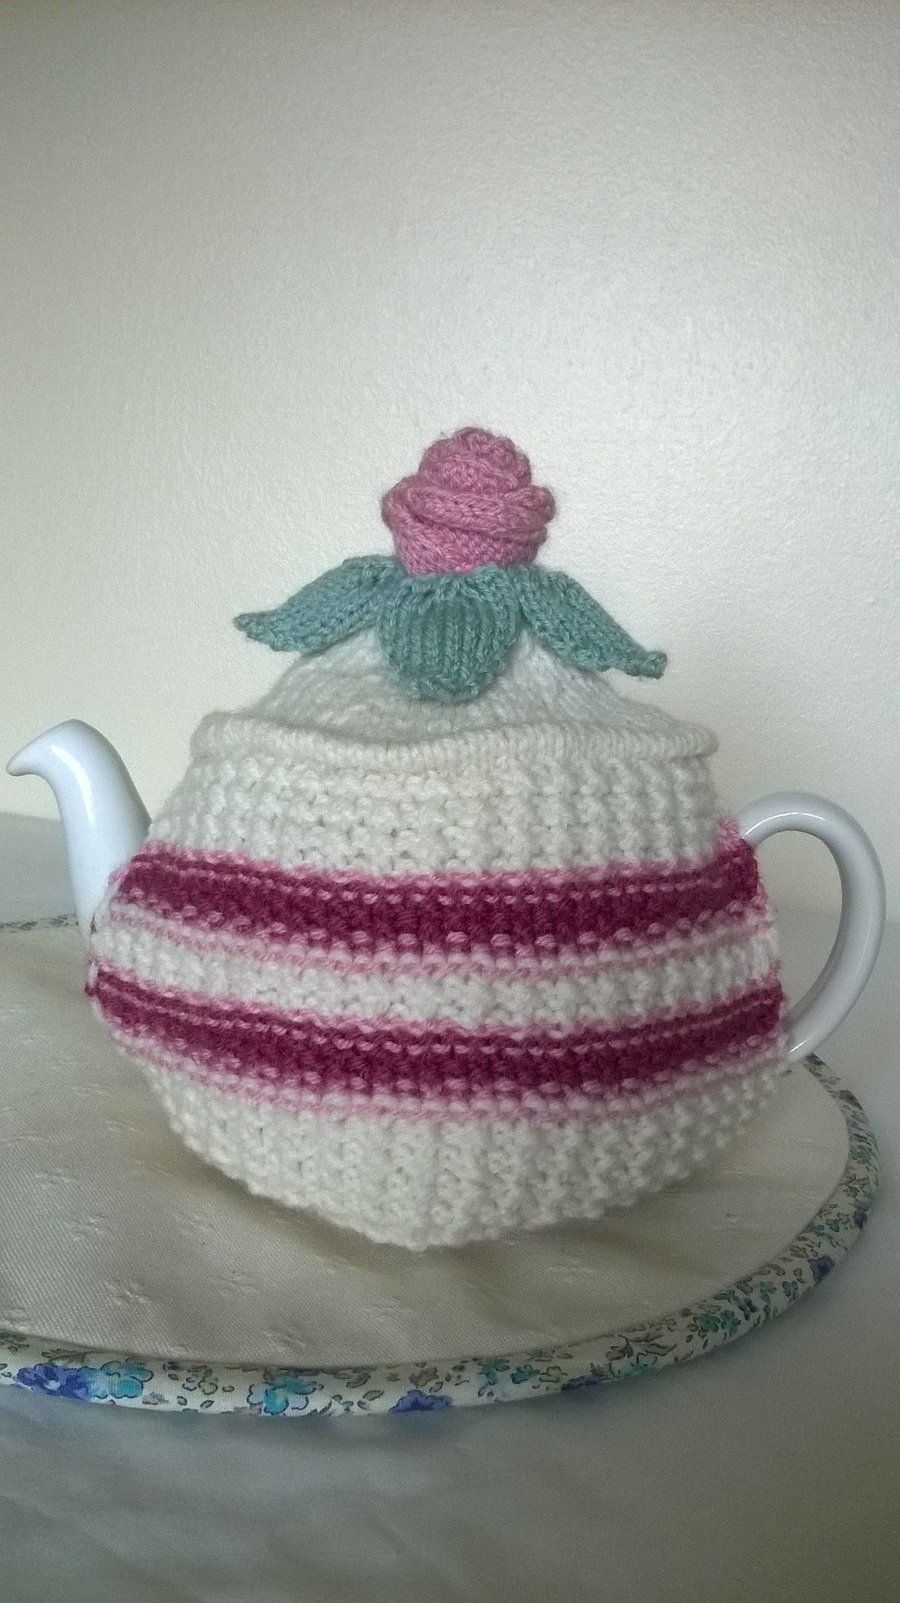 Hand knitted victoria sponge tea cosie